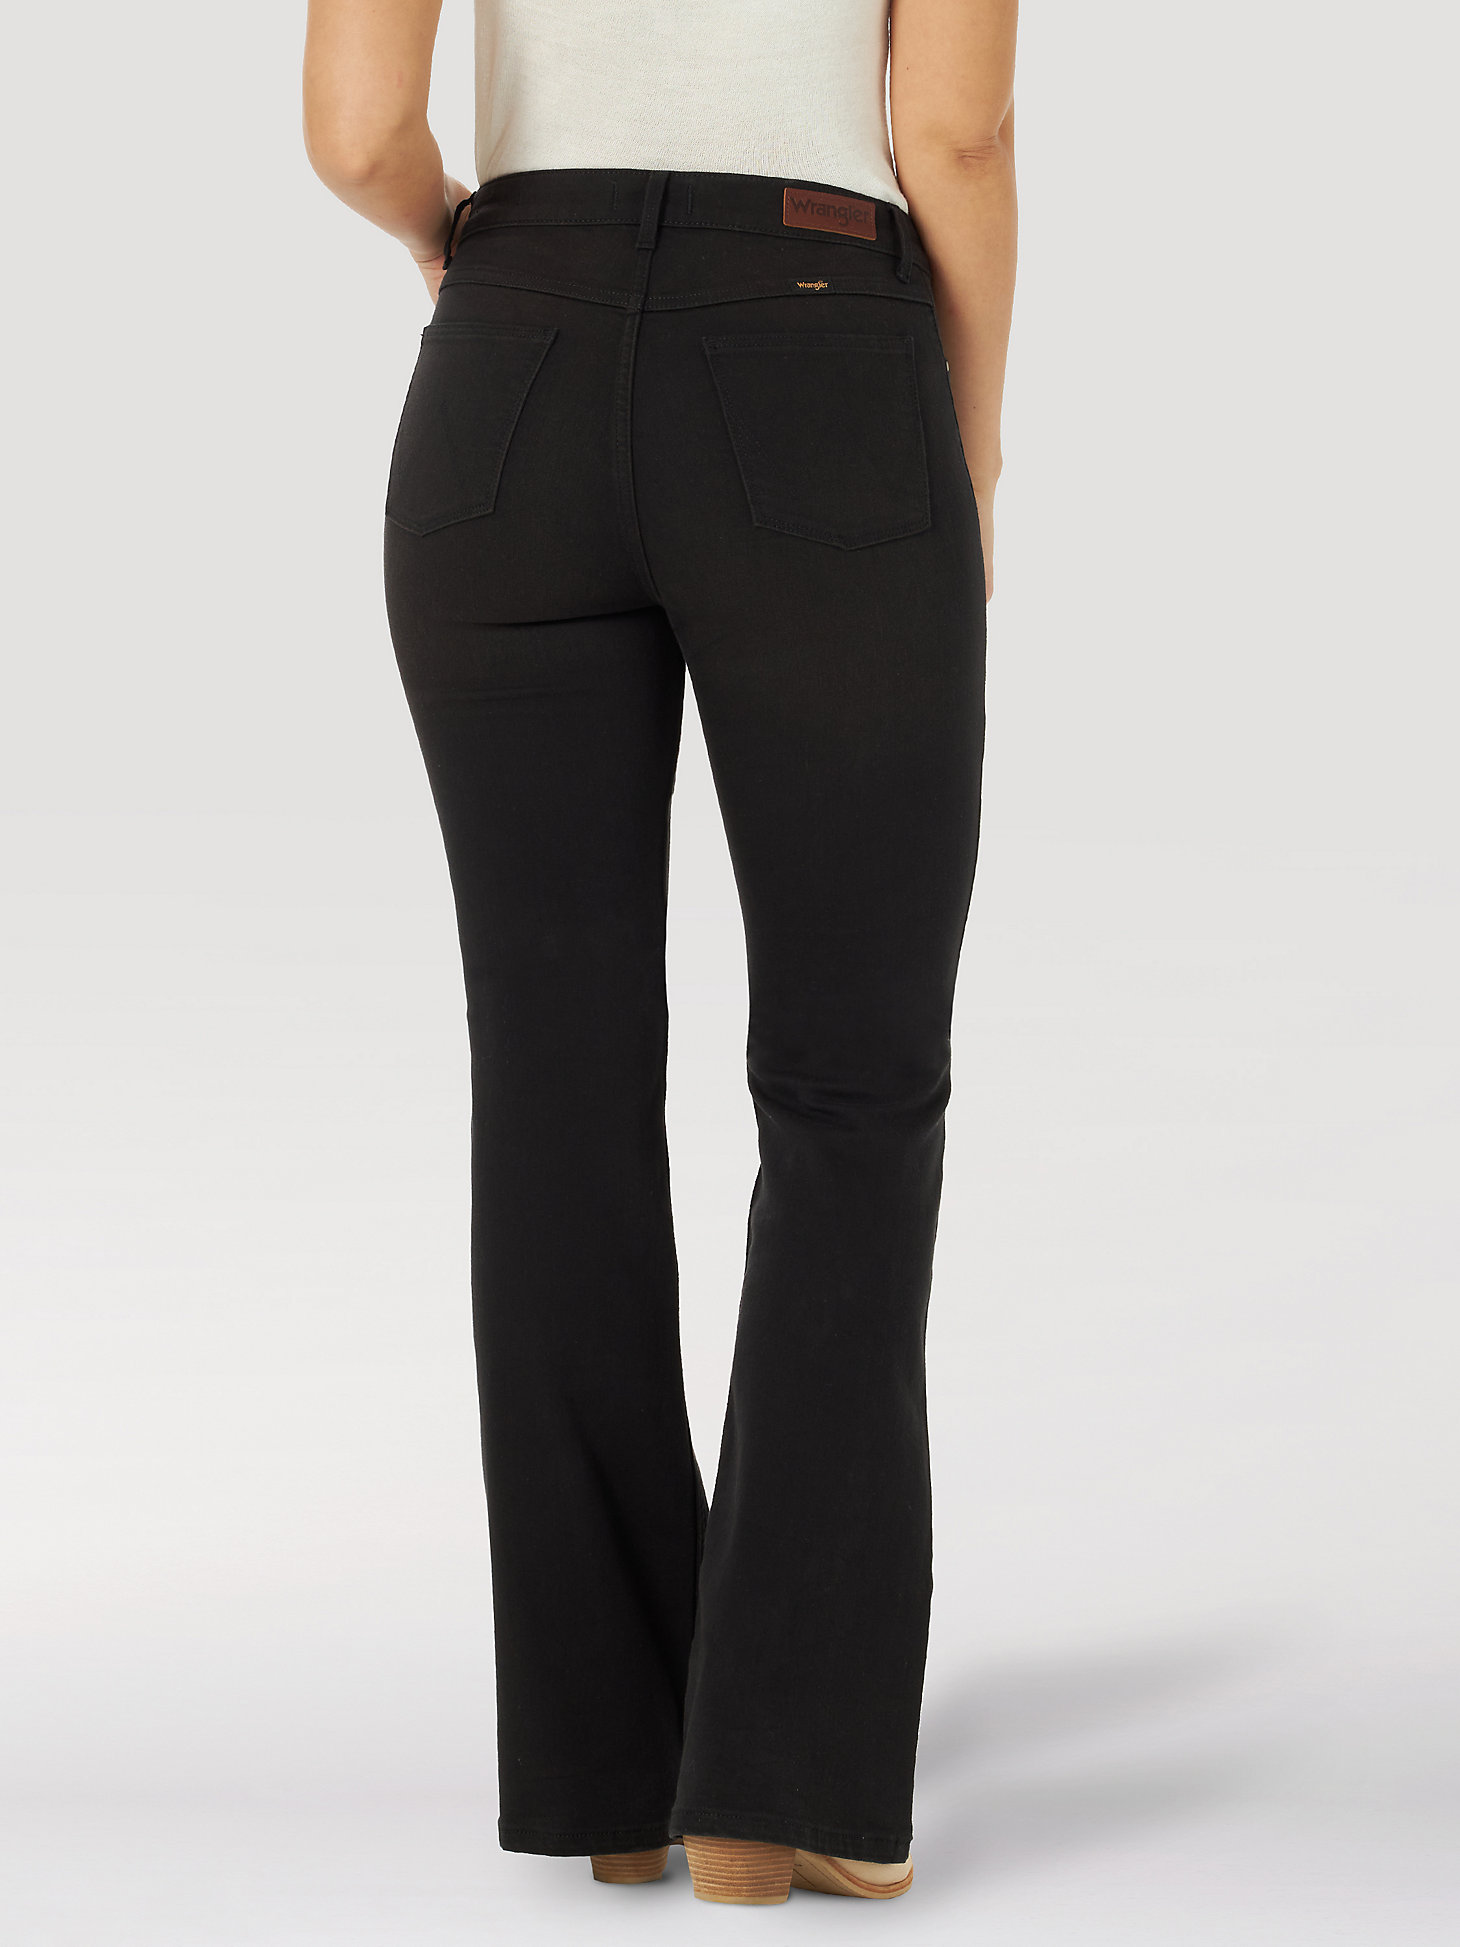 Women's Wrangler® Fierce Flare Jean in Black alternative view 1